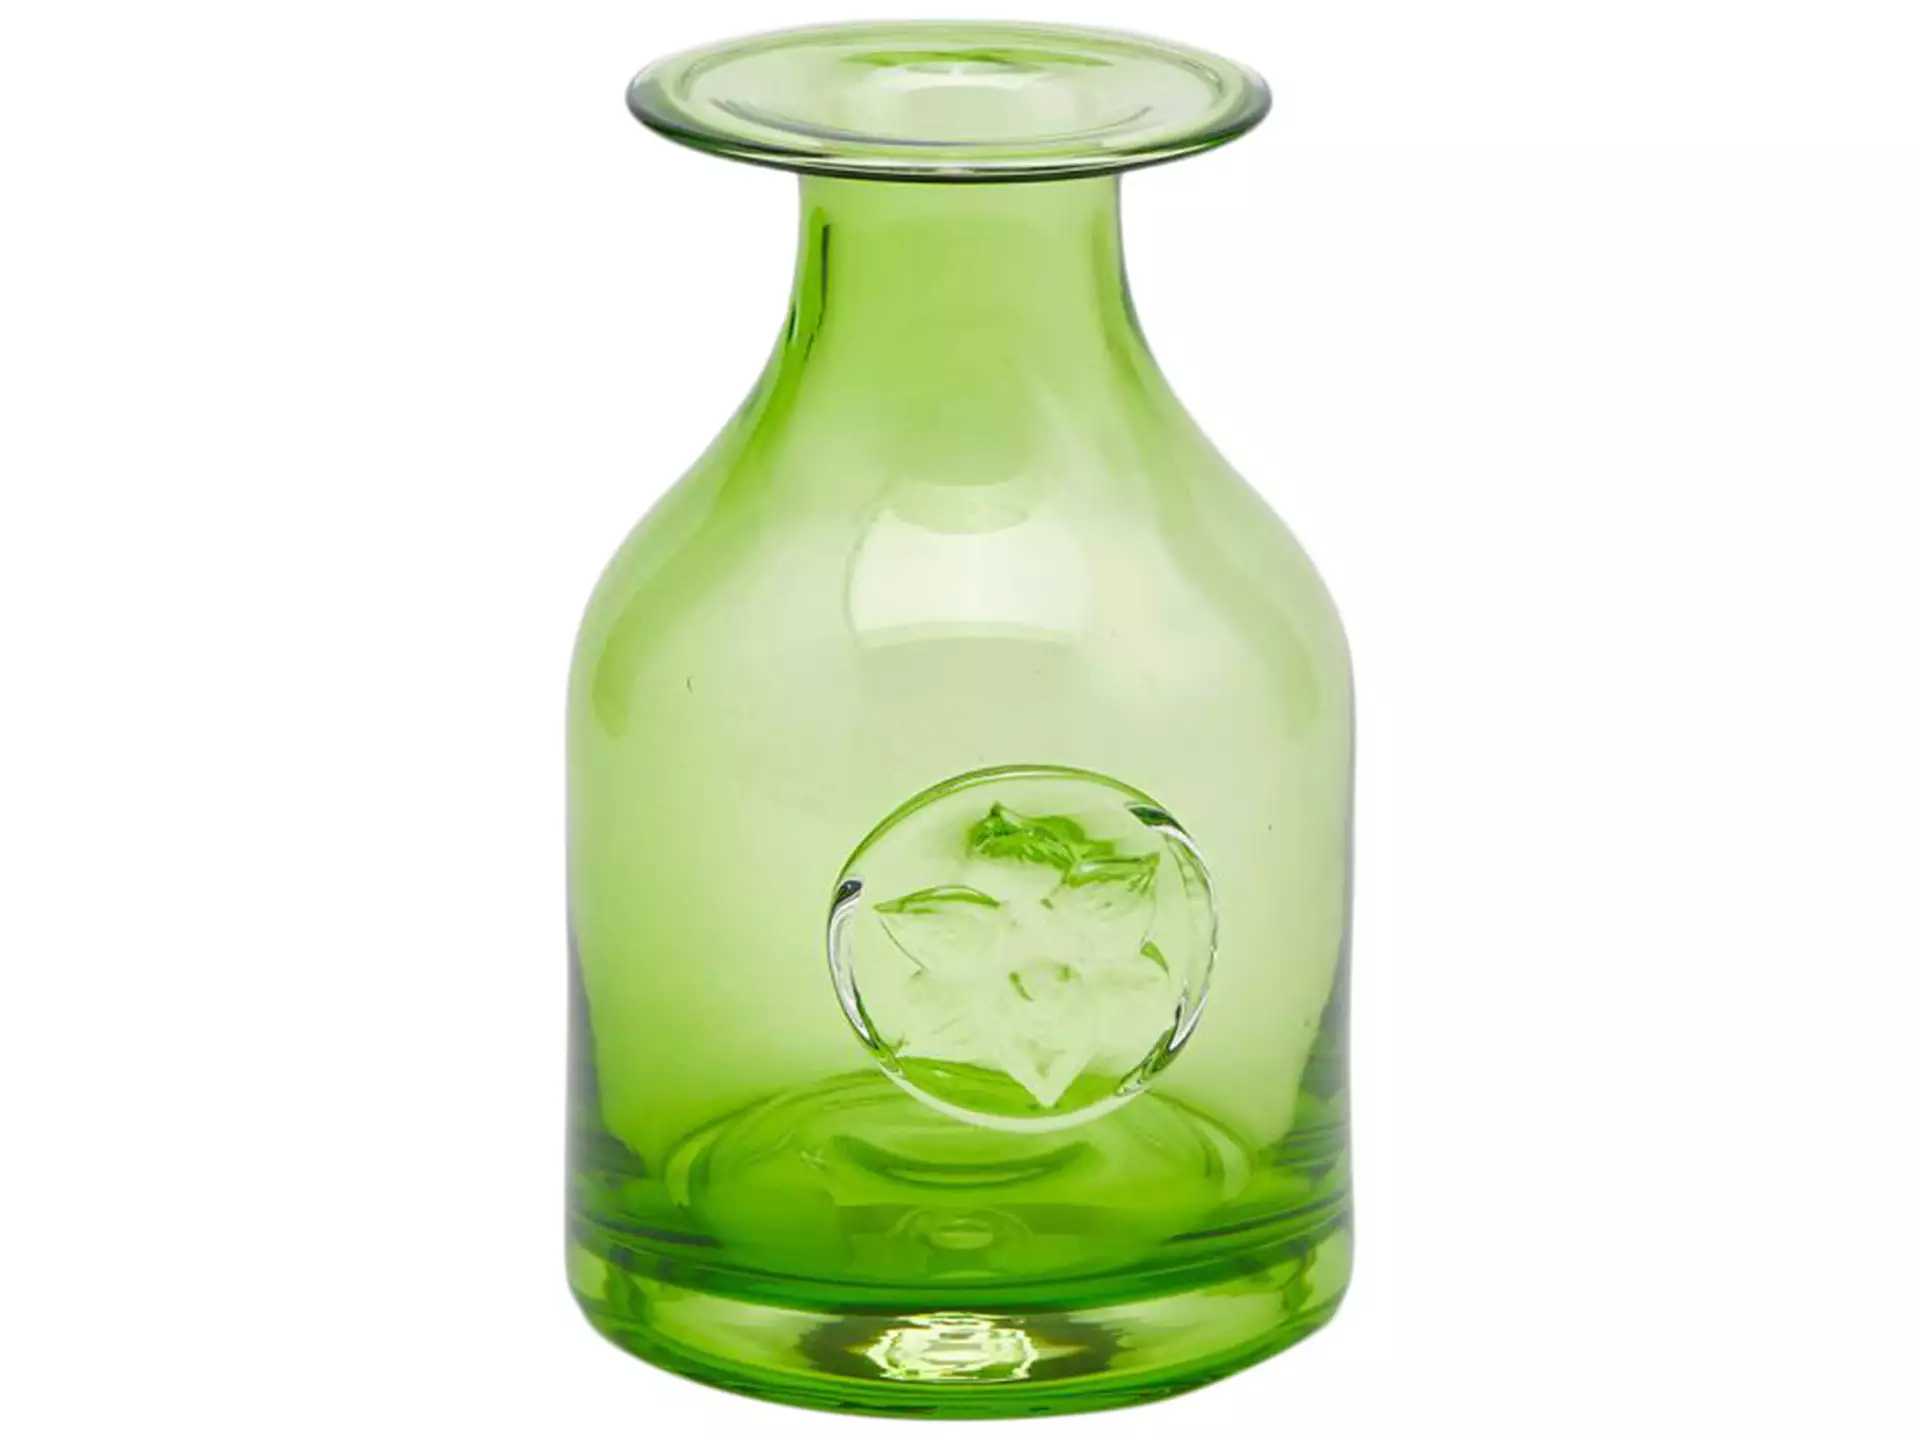 Vase Flaschenvase mit Wappen Grün H: 15 cm Edg / Farbe: Grün